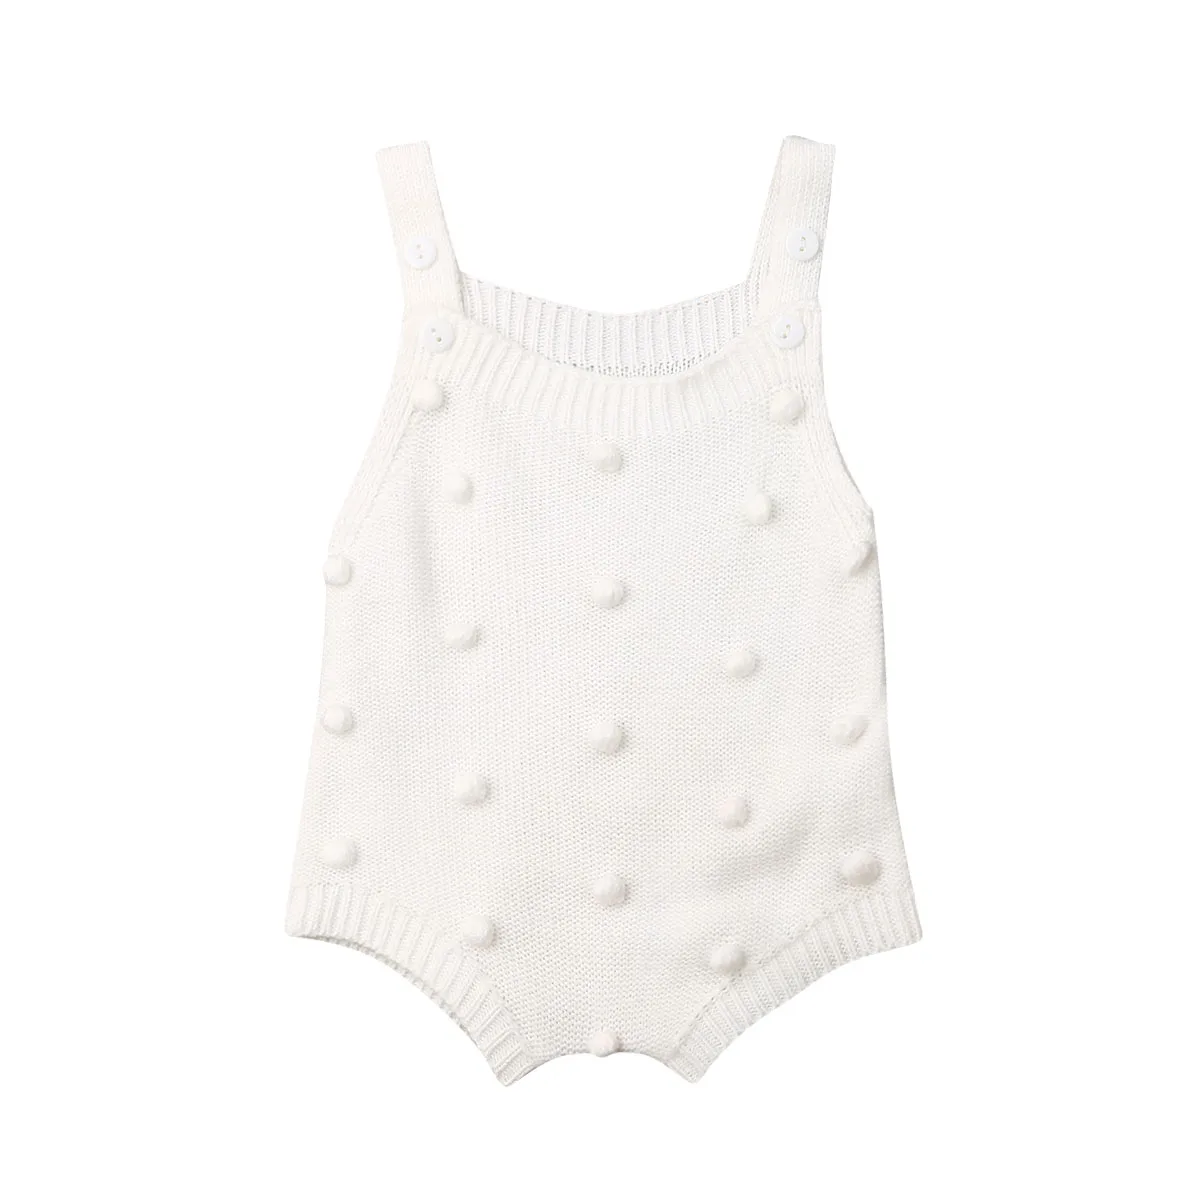 CYSINCOS/0 до 18 месяцев, детские вязаные комбинезоны, комбинезон без рукавов с маленькими шариками для новорожденных мальчиков и девочек, цельнокроеная одежда Зимний комбинезон - Цвет: Белый